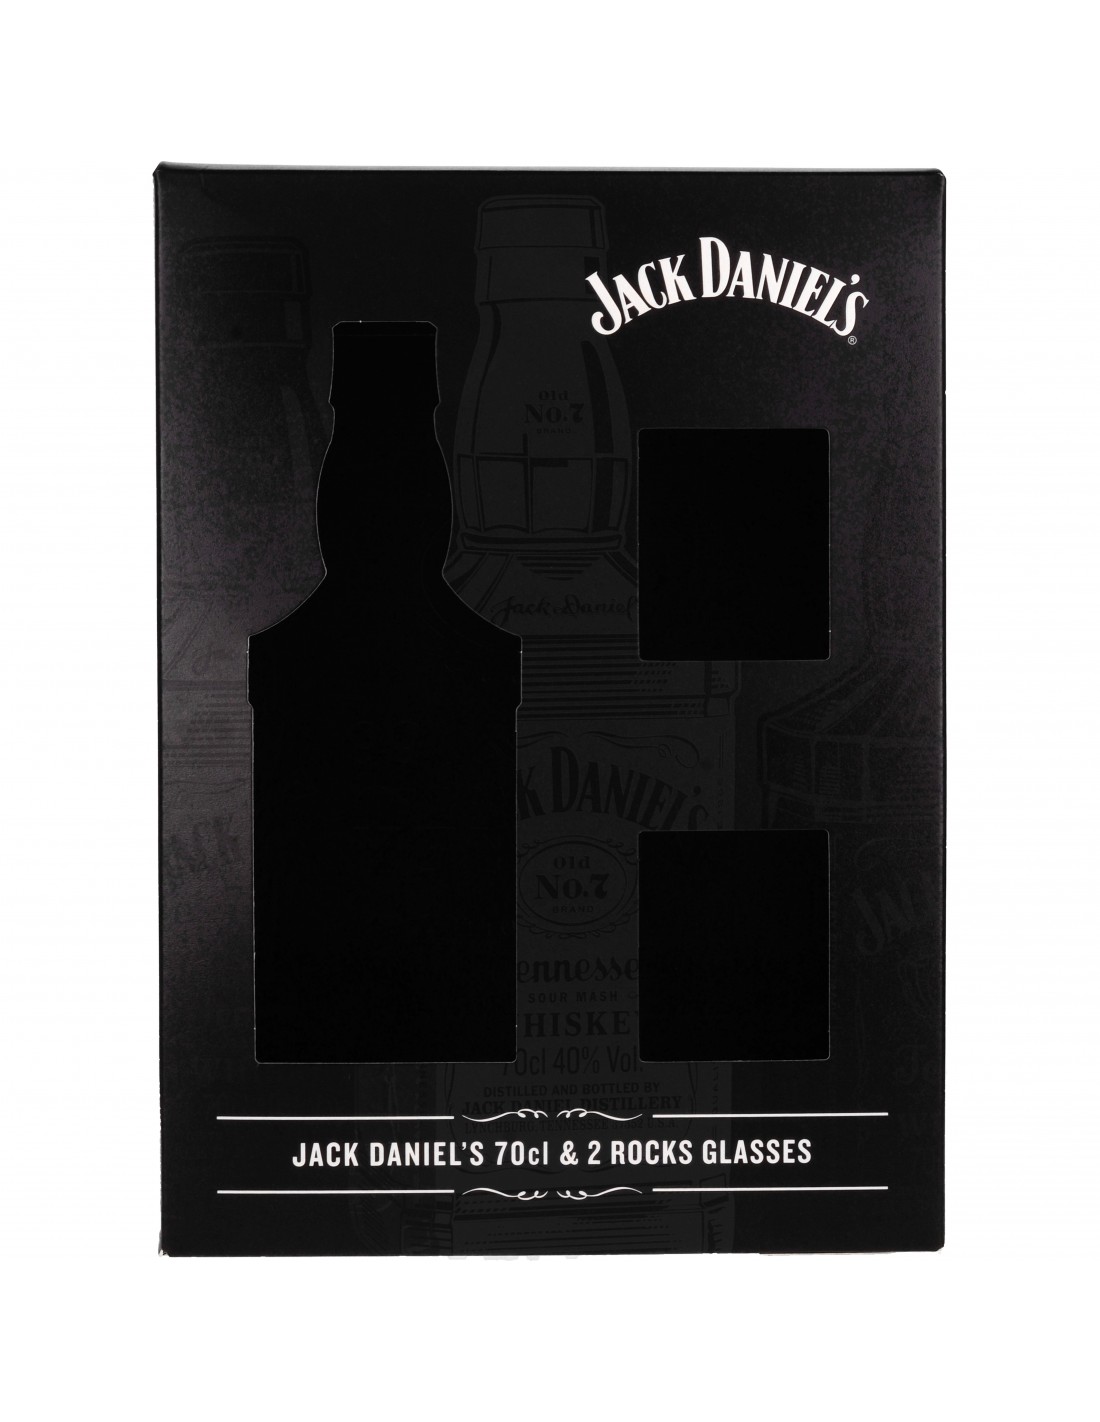 Coffret Whisky Jack Daniel's Gentleman Jack + 2 verres » Spirits